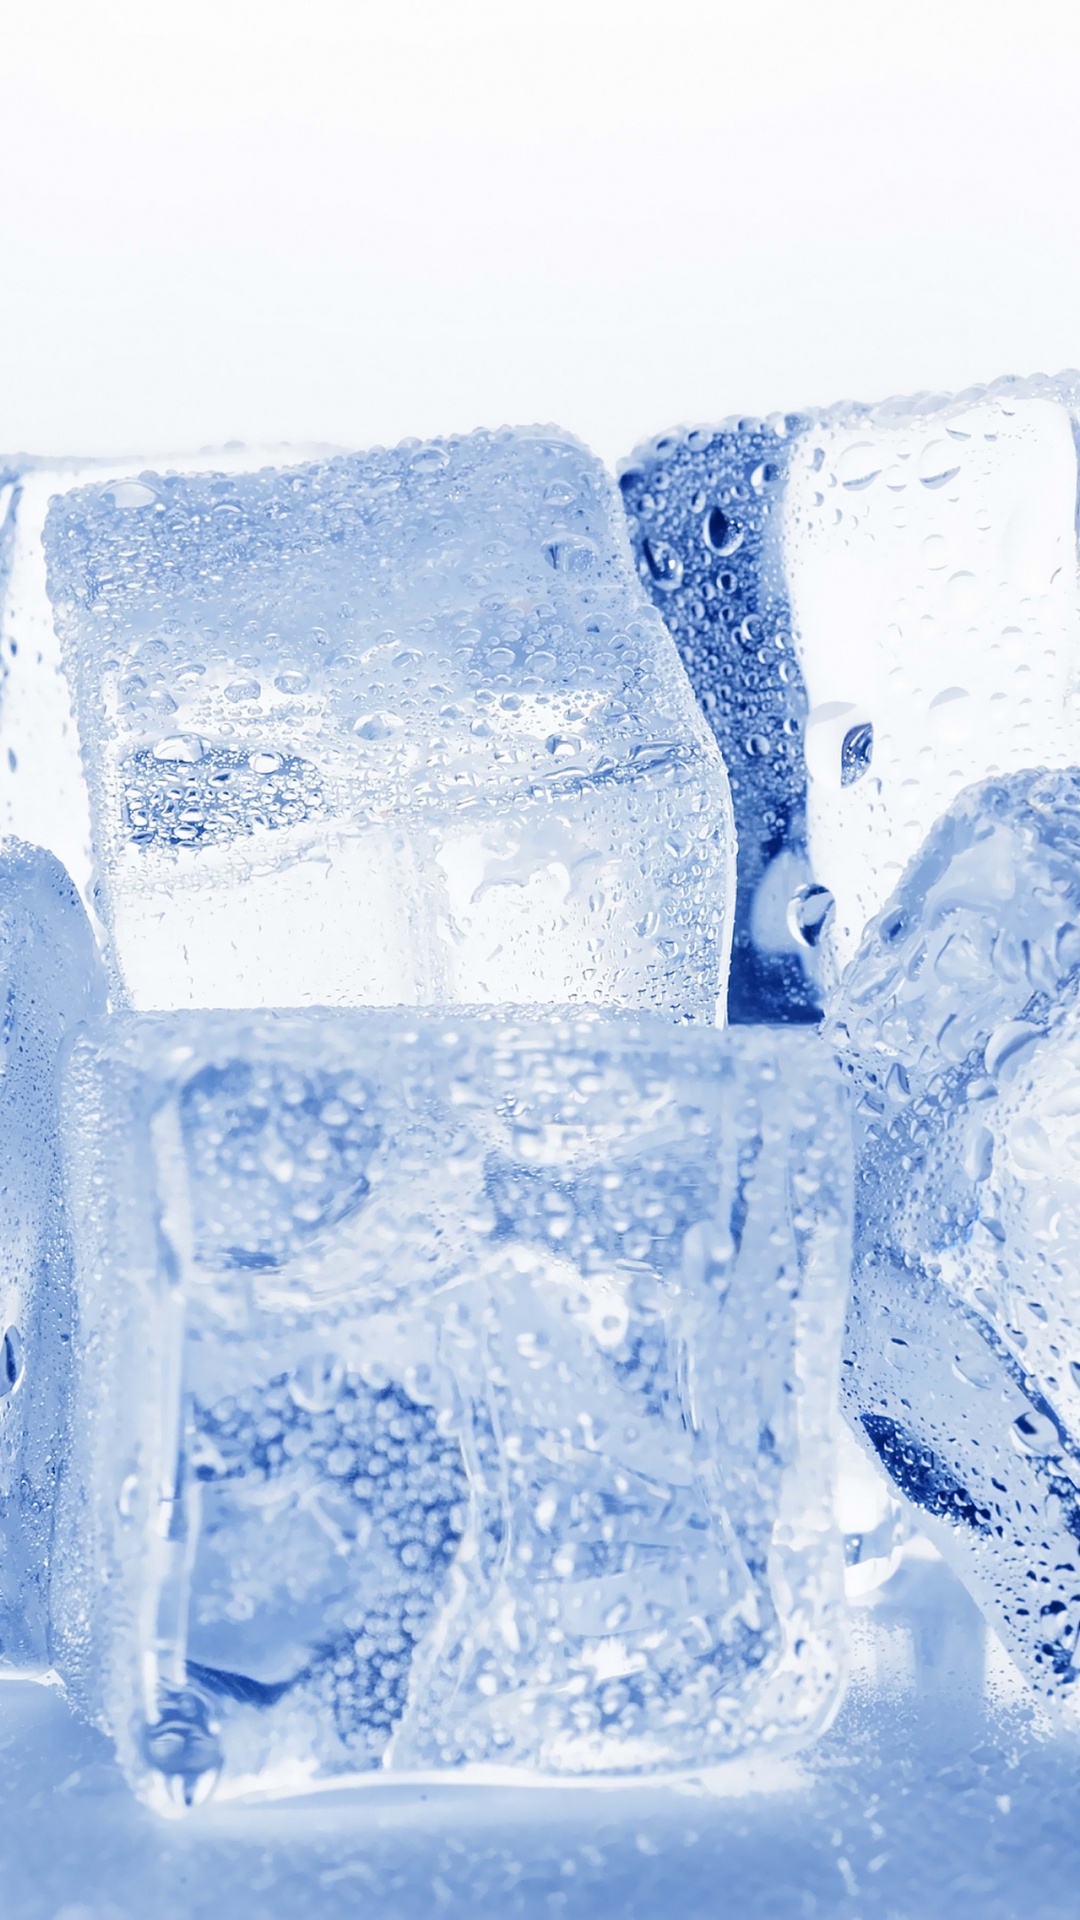 冰块, 冻结, 透明材料, 熔, 疼痛 壁纸 1080x1920 允许